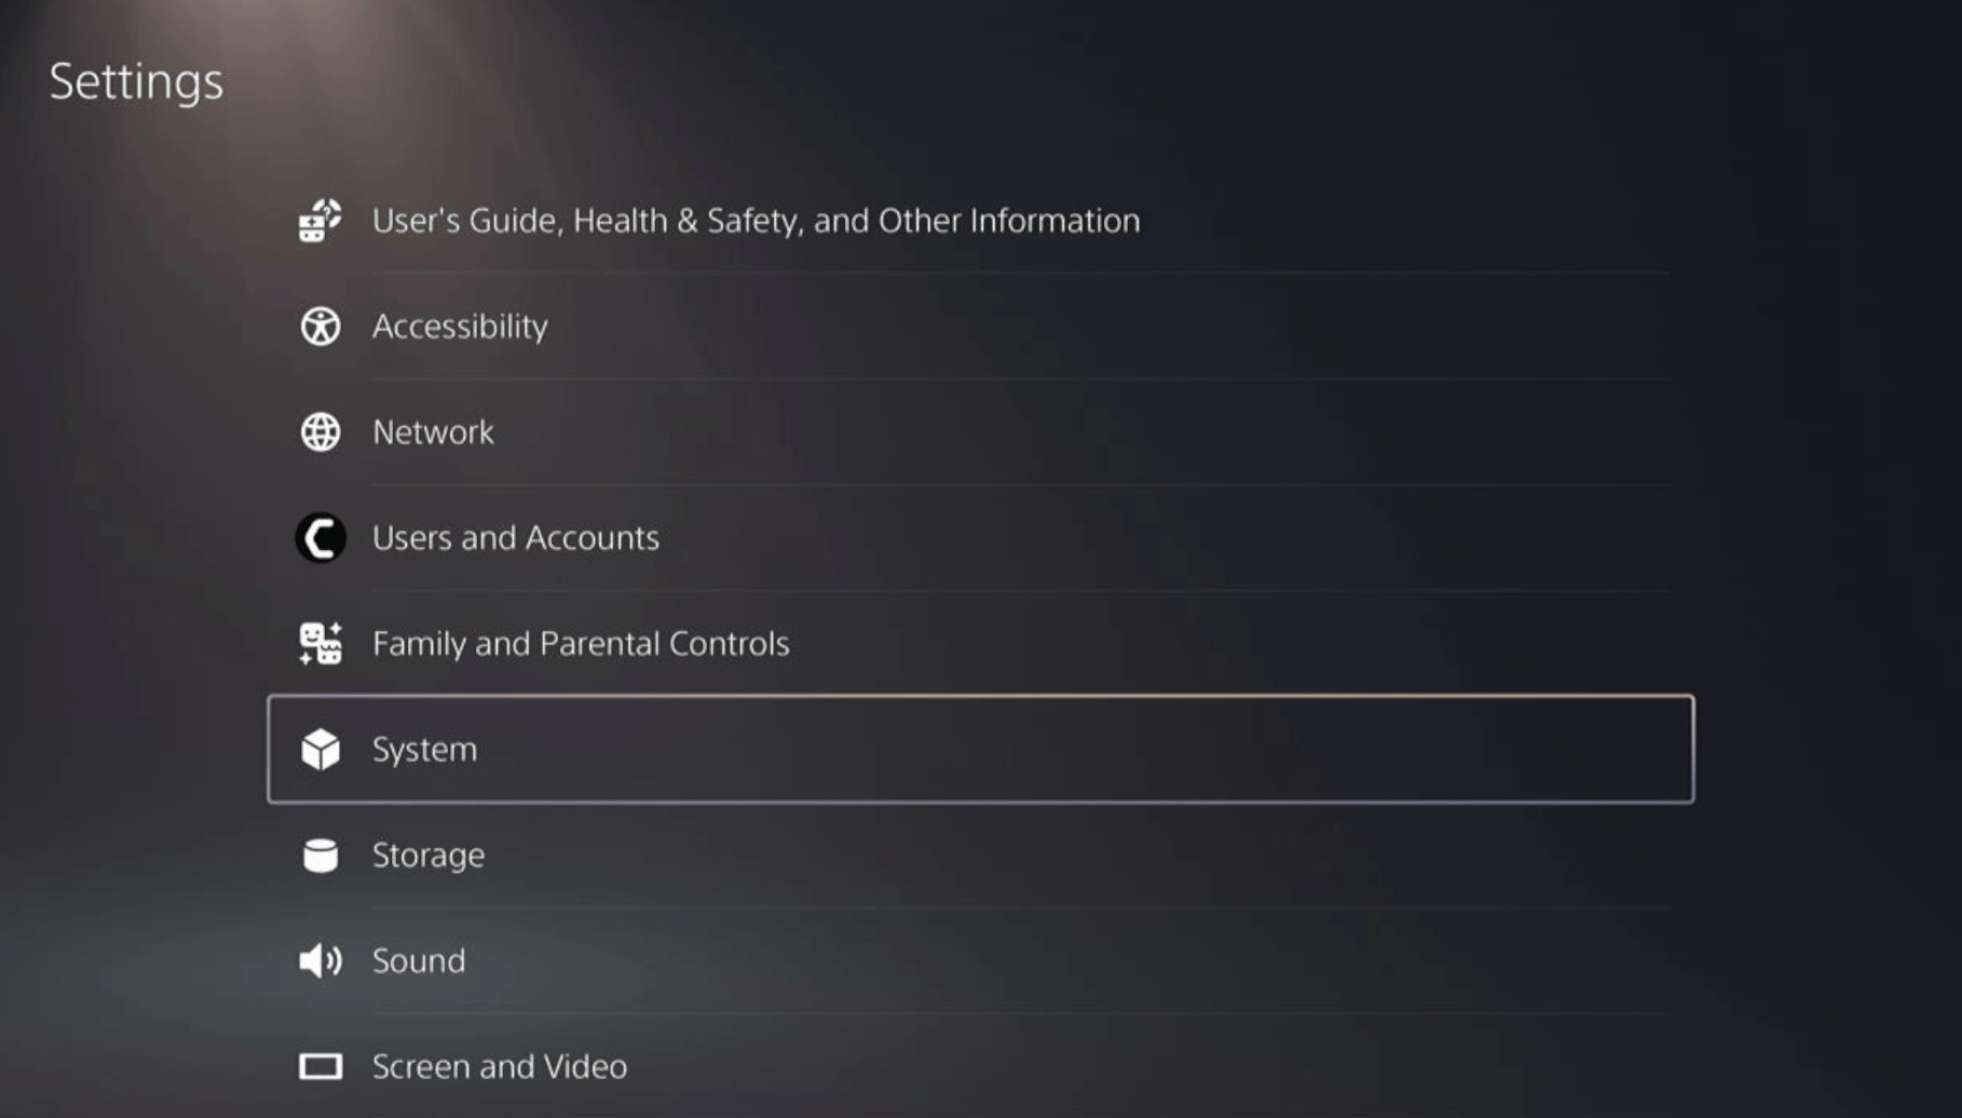 System in PS5 Settings menu